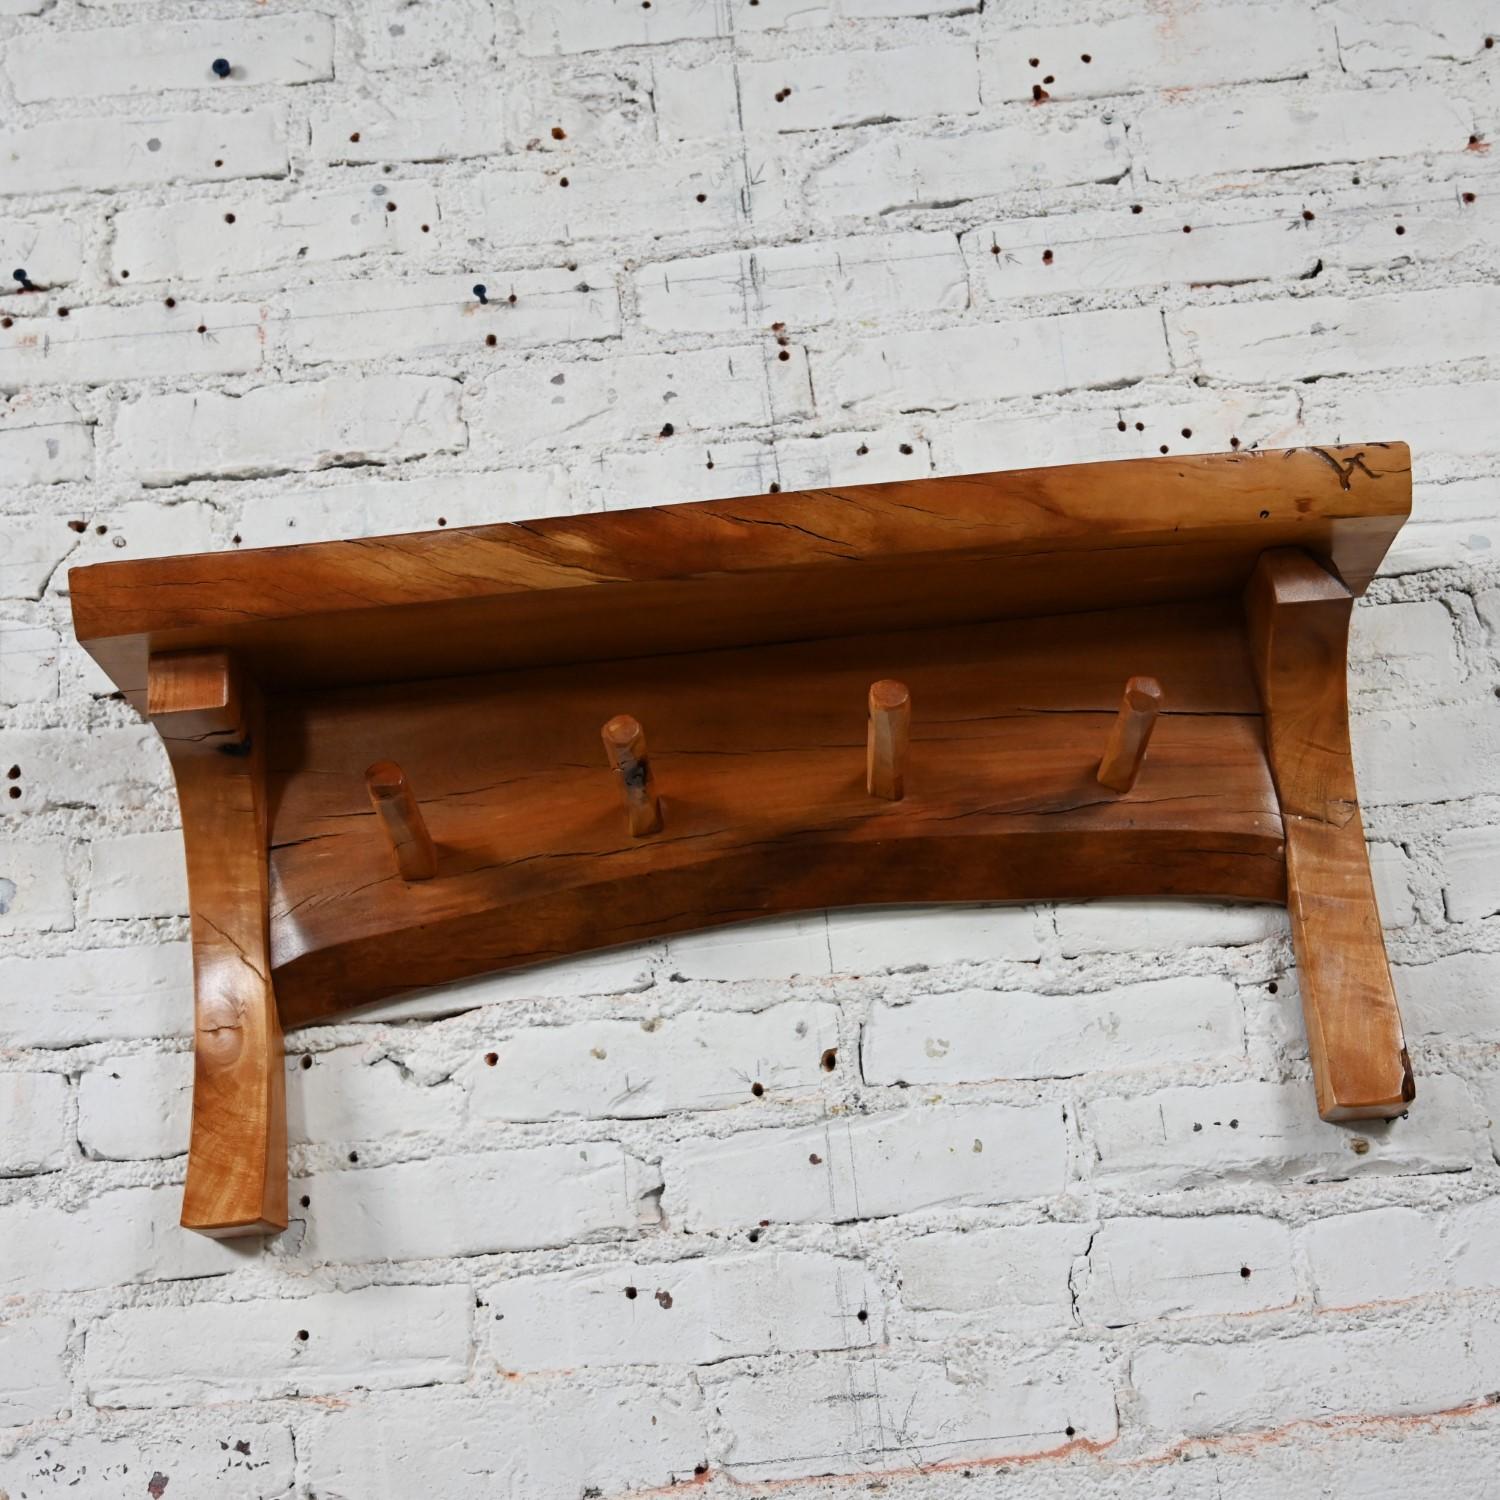 20th Century 20th C Folk Art Organic Modern Rustic Natural Edge Wood Slab Wall Shelf w/ Pegs For Sale